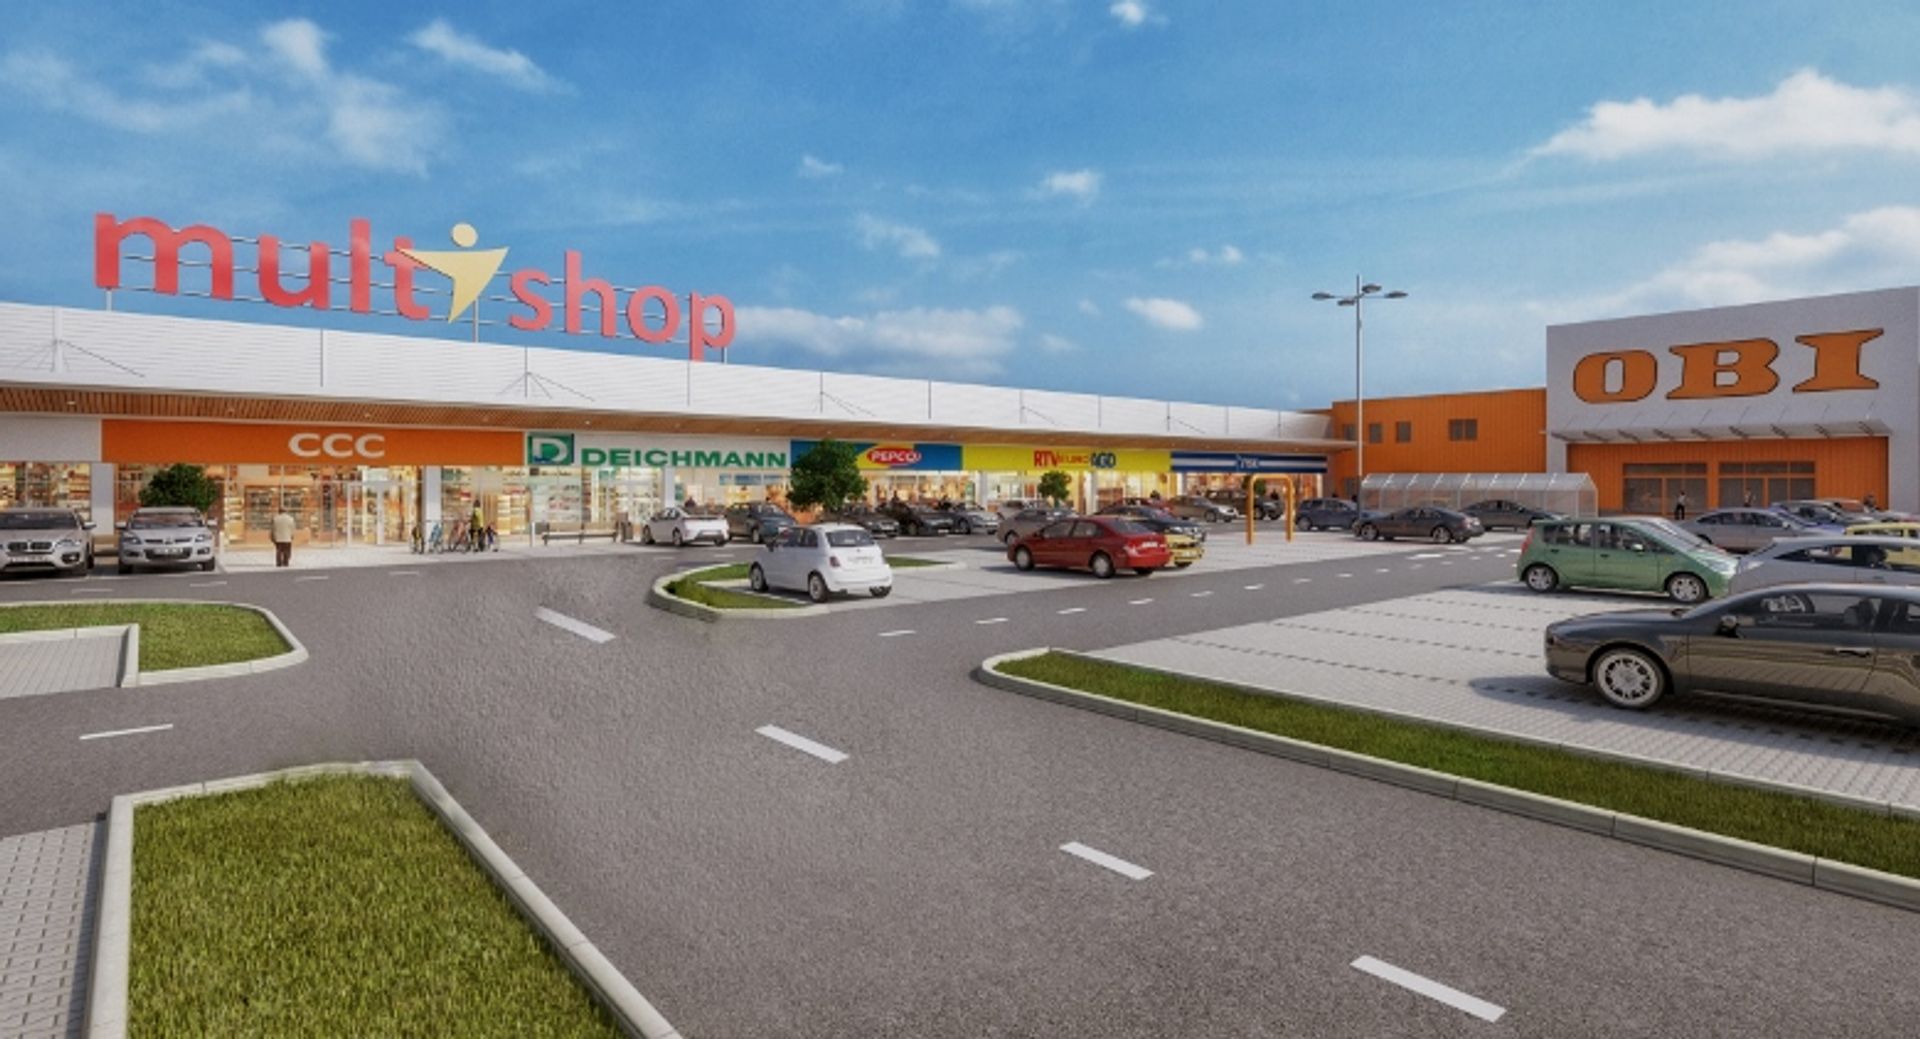  Otwarcie III fazy Parku Handlowego Multishop w Sochaczewie &#8211; firma Cushman & Wakefield wybrana zarządcą obiektu